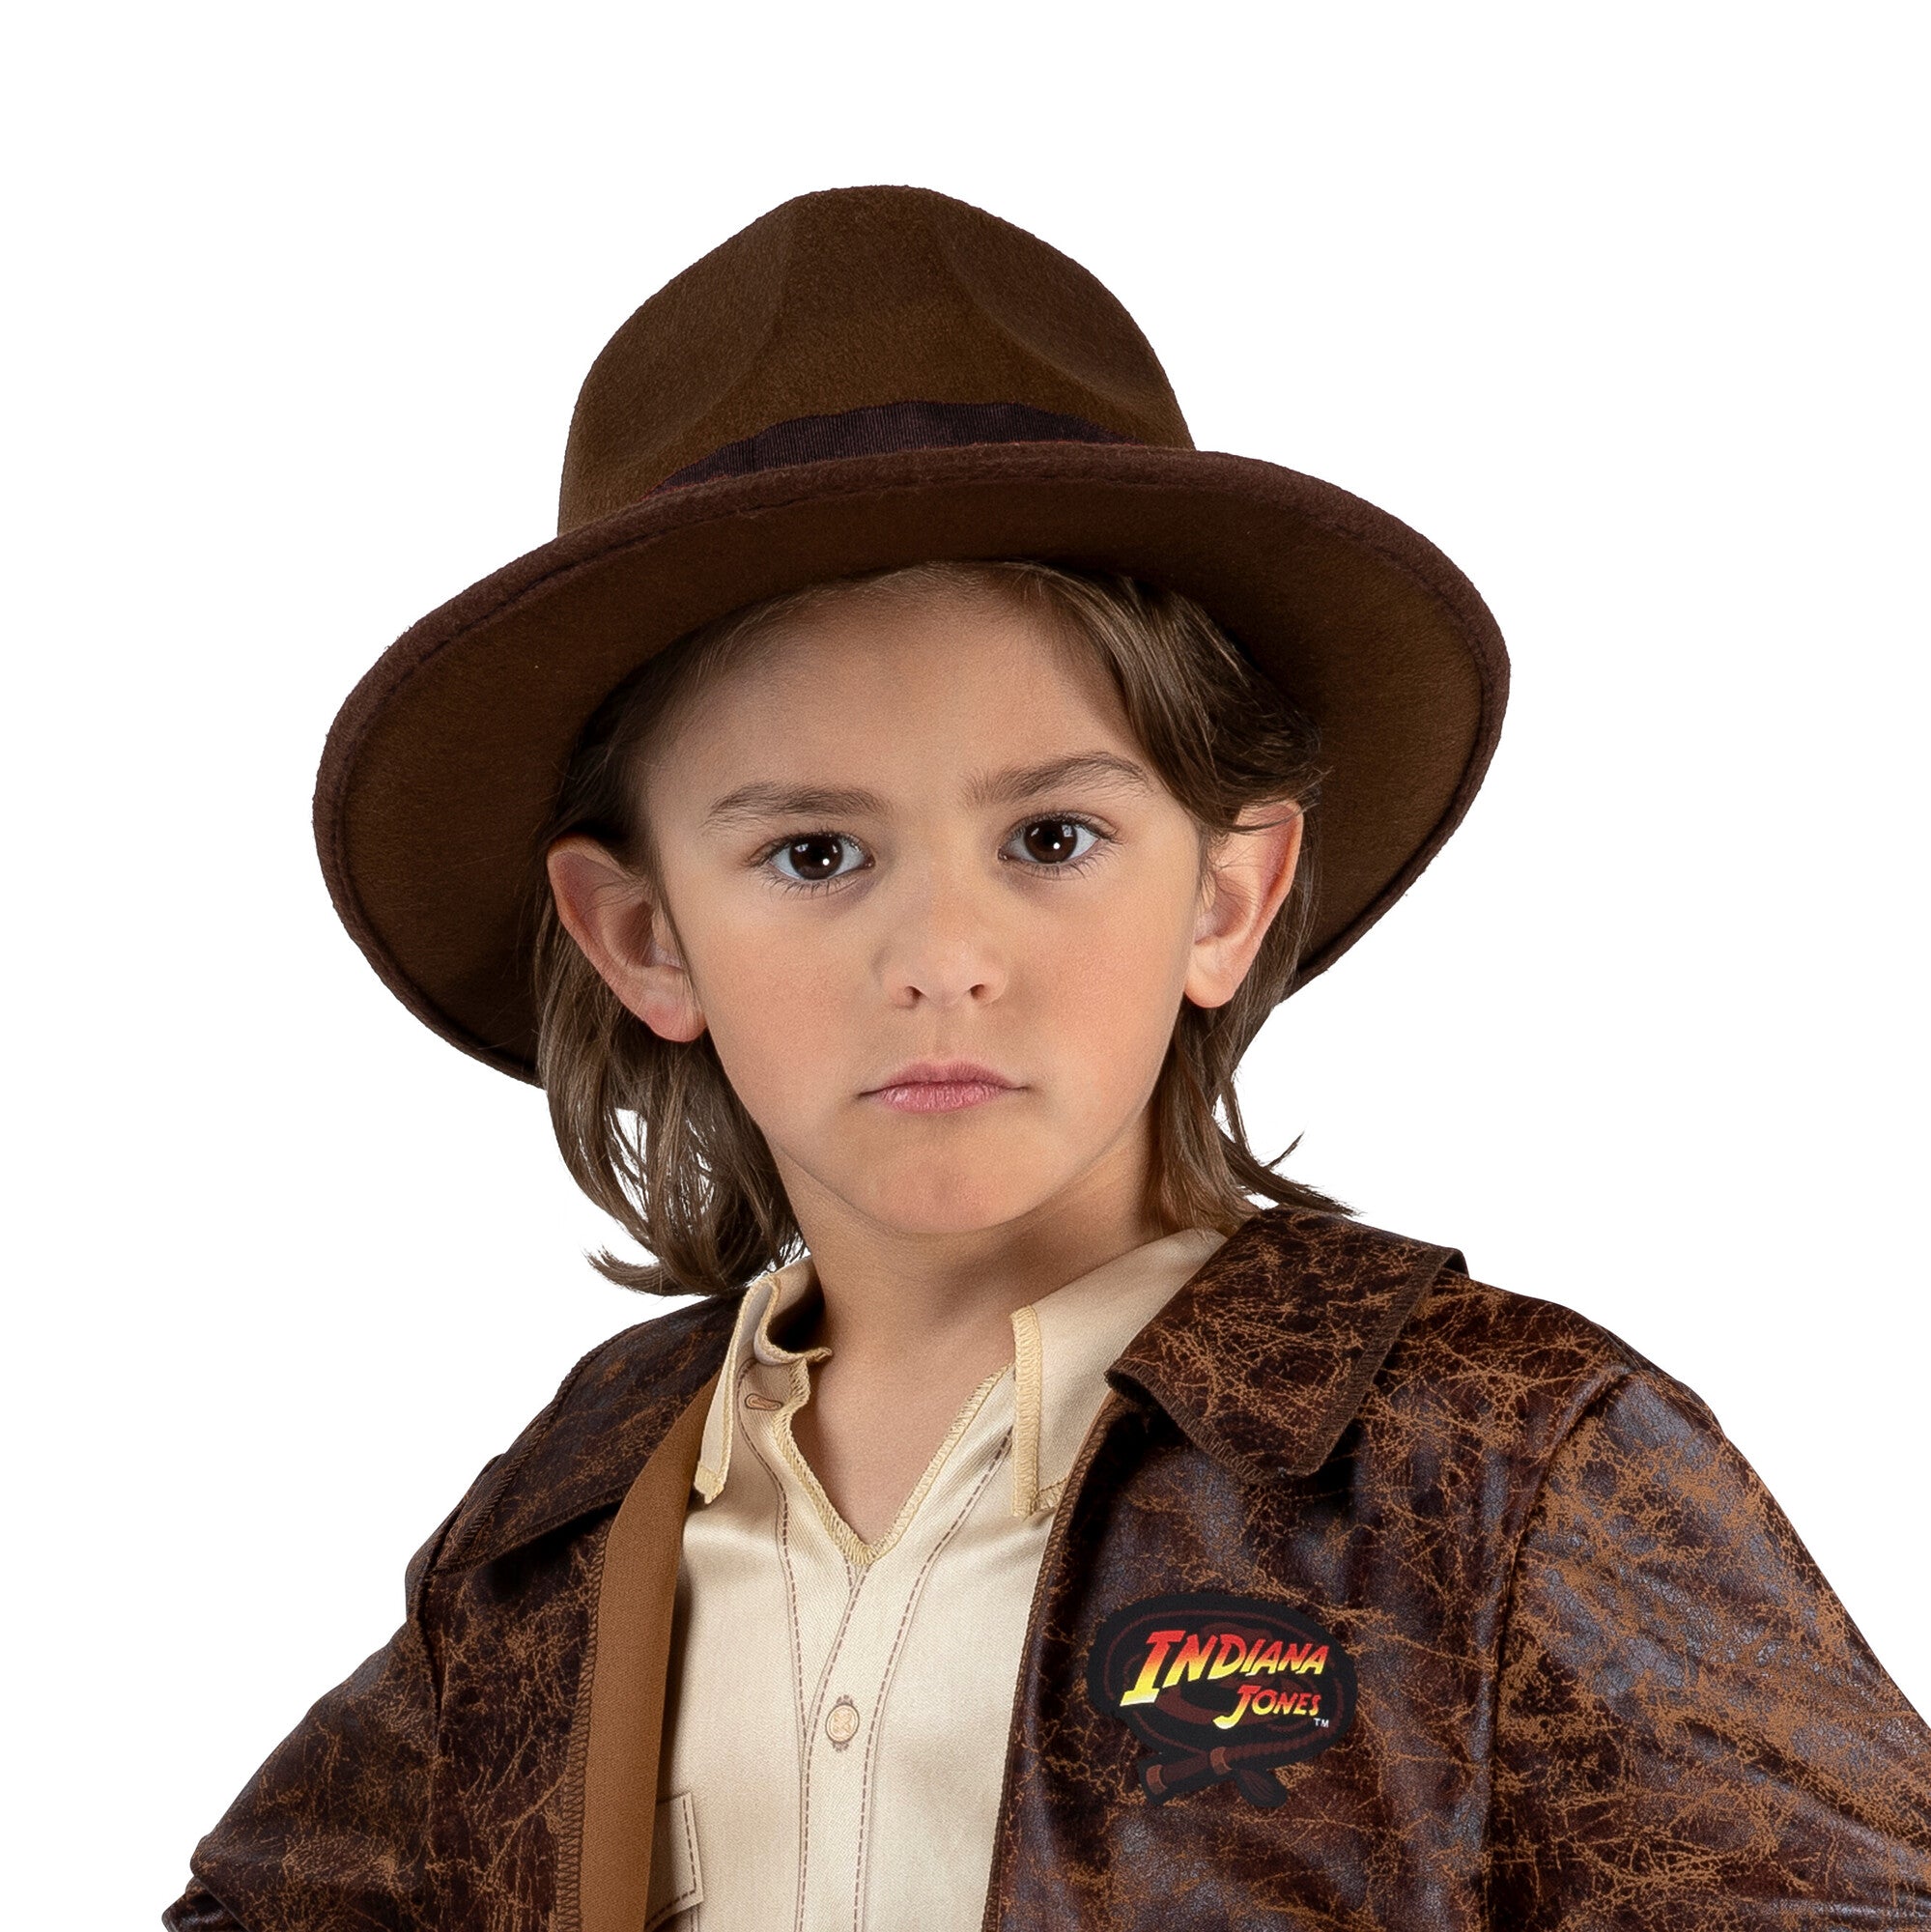 Indiana Jones Qualux Costume for Kids